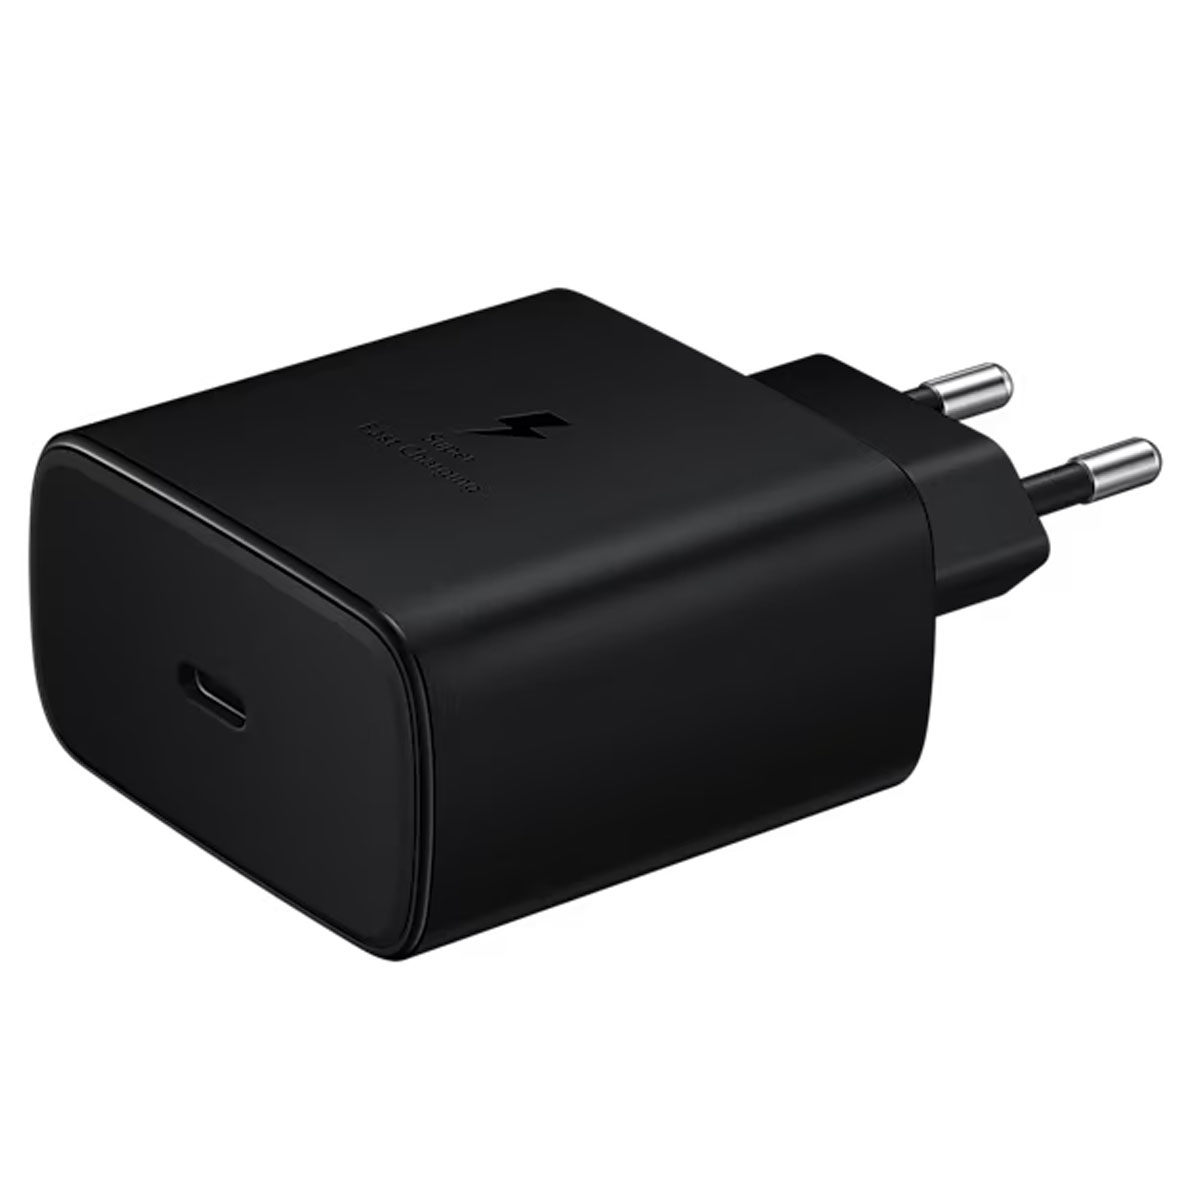 СЗУ (Сетевое зарядное устройство) EP-TA845, 45W, 1 USB Type C, цвет черный